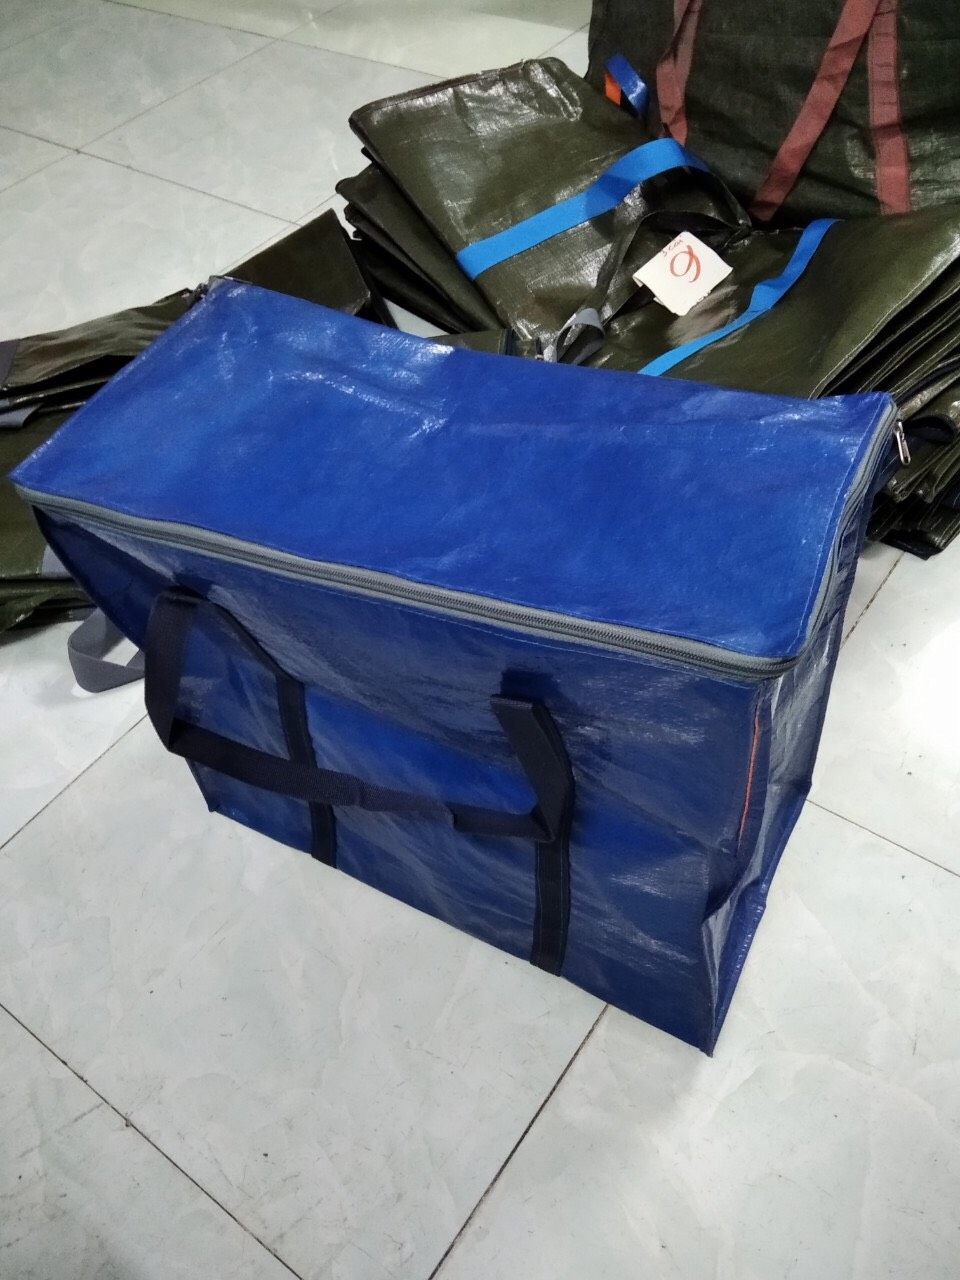 COMBO 5c số 5 Túi bạt xanh cam đựng đồ, túi bạt đi chợ, túi shiper, túi chứa hàng.